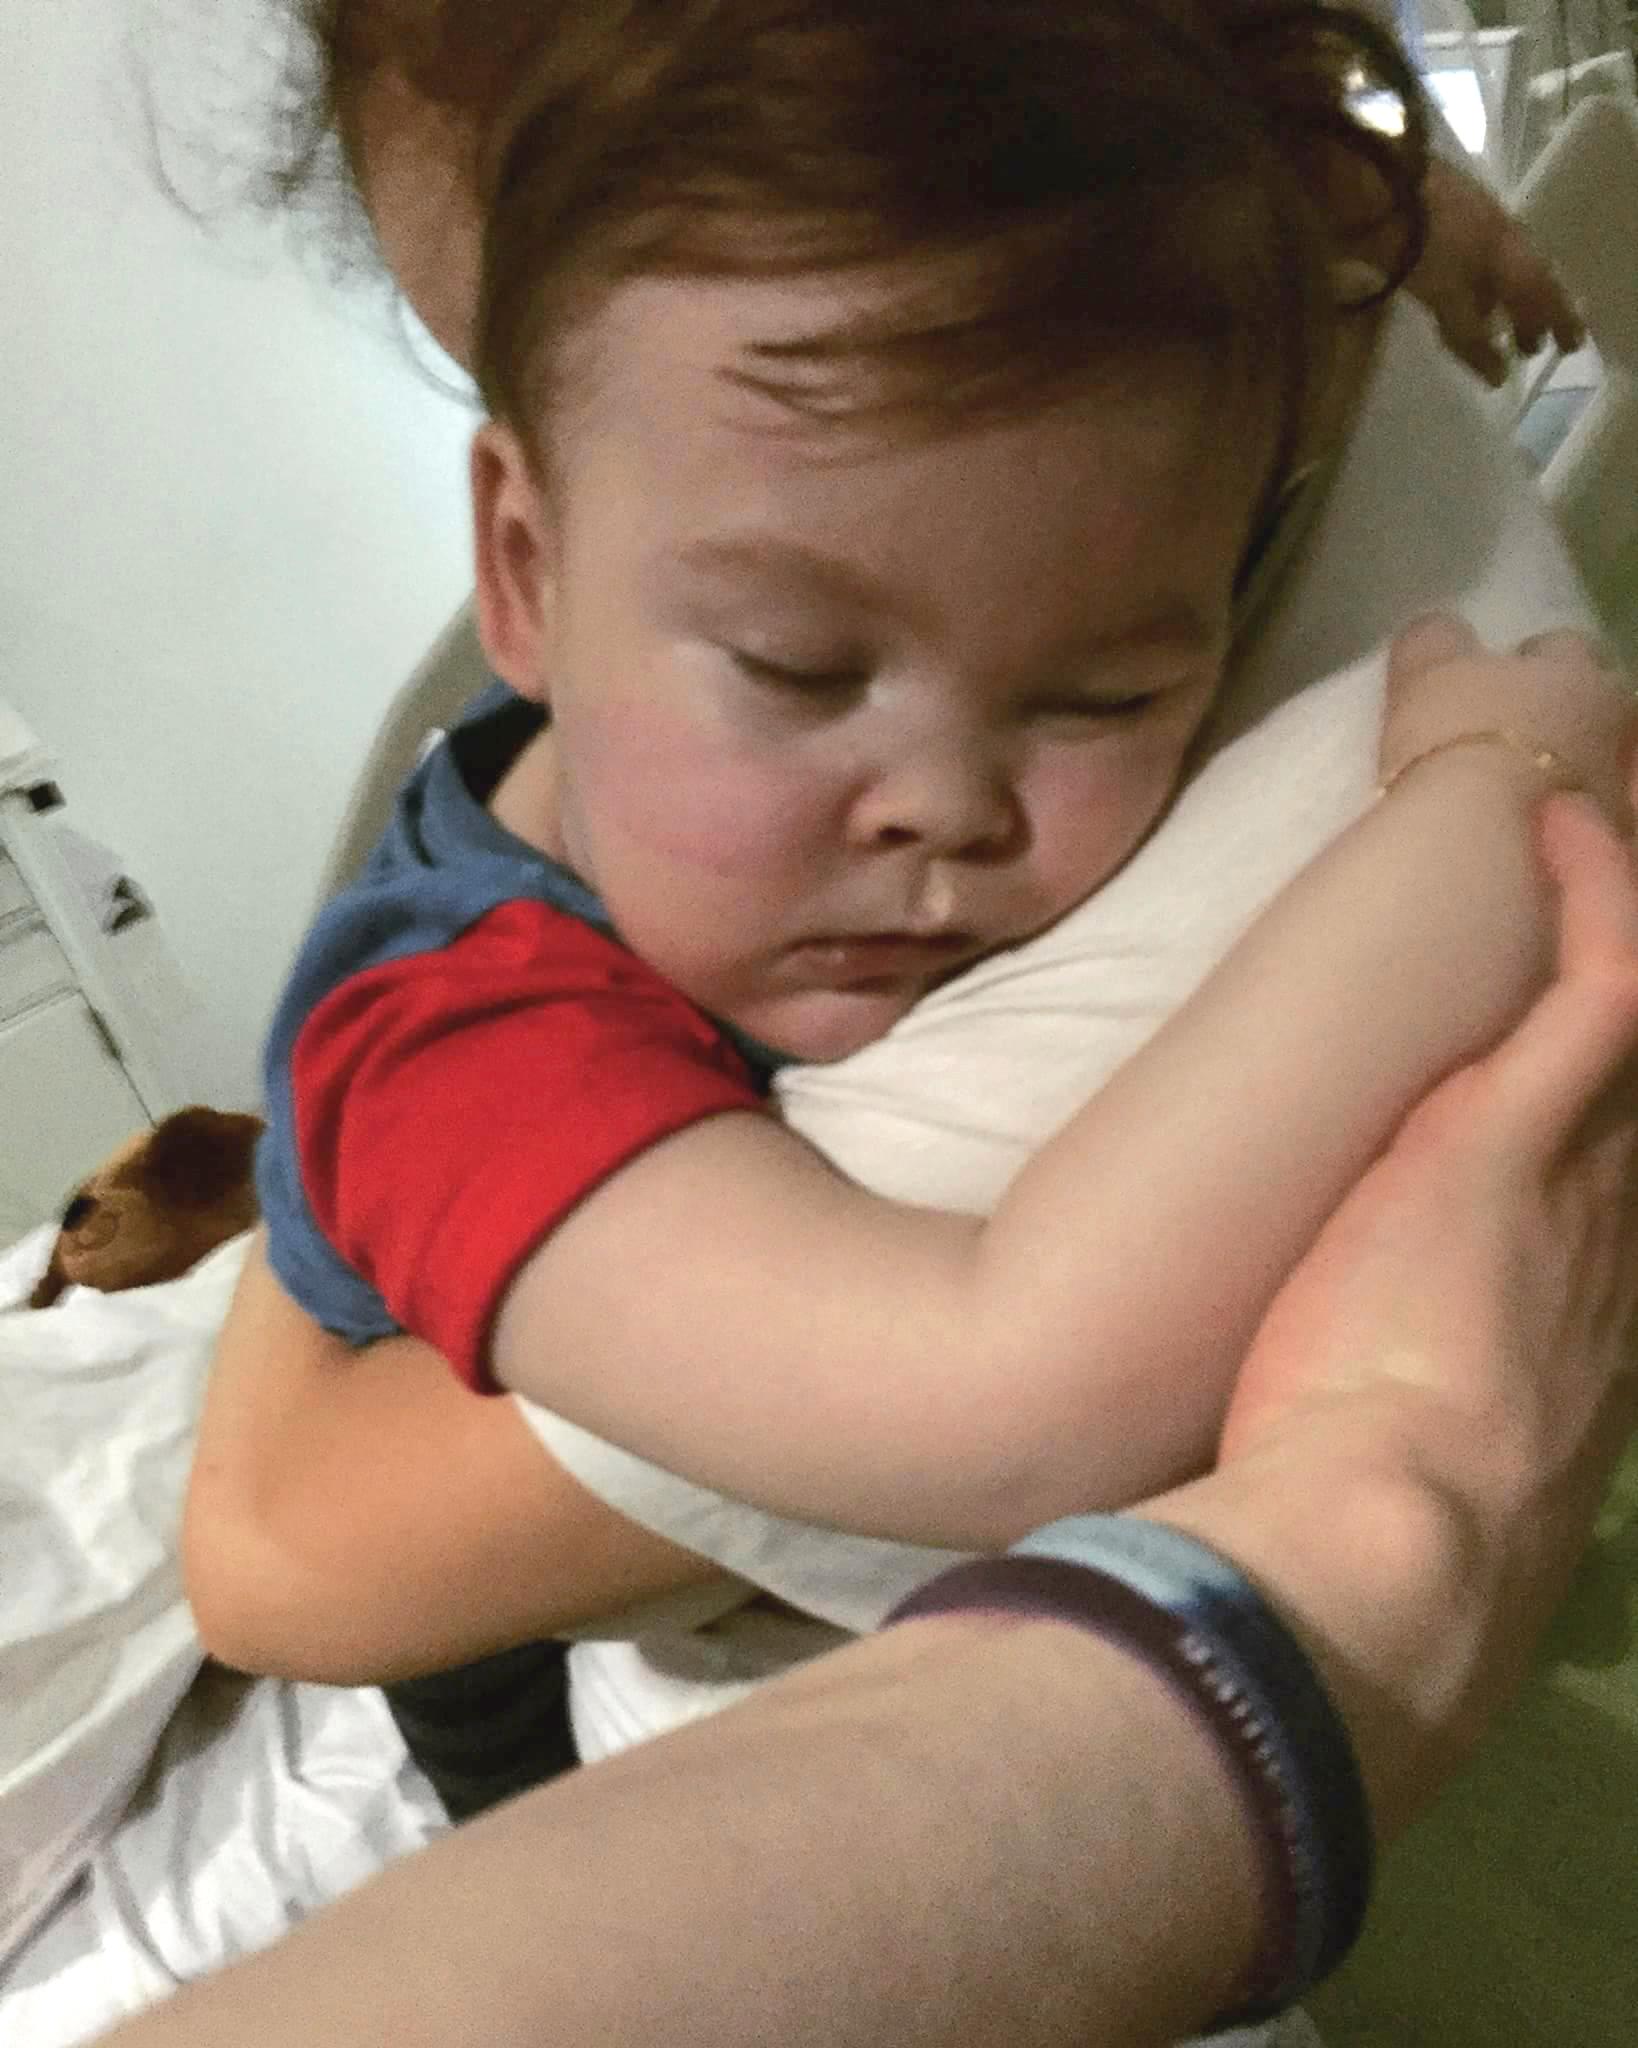 23 månader gamla Alfie Evans är svårt hjärnskadad.